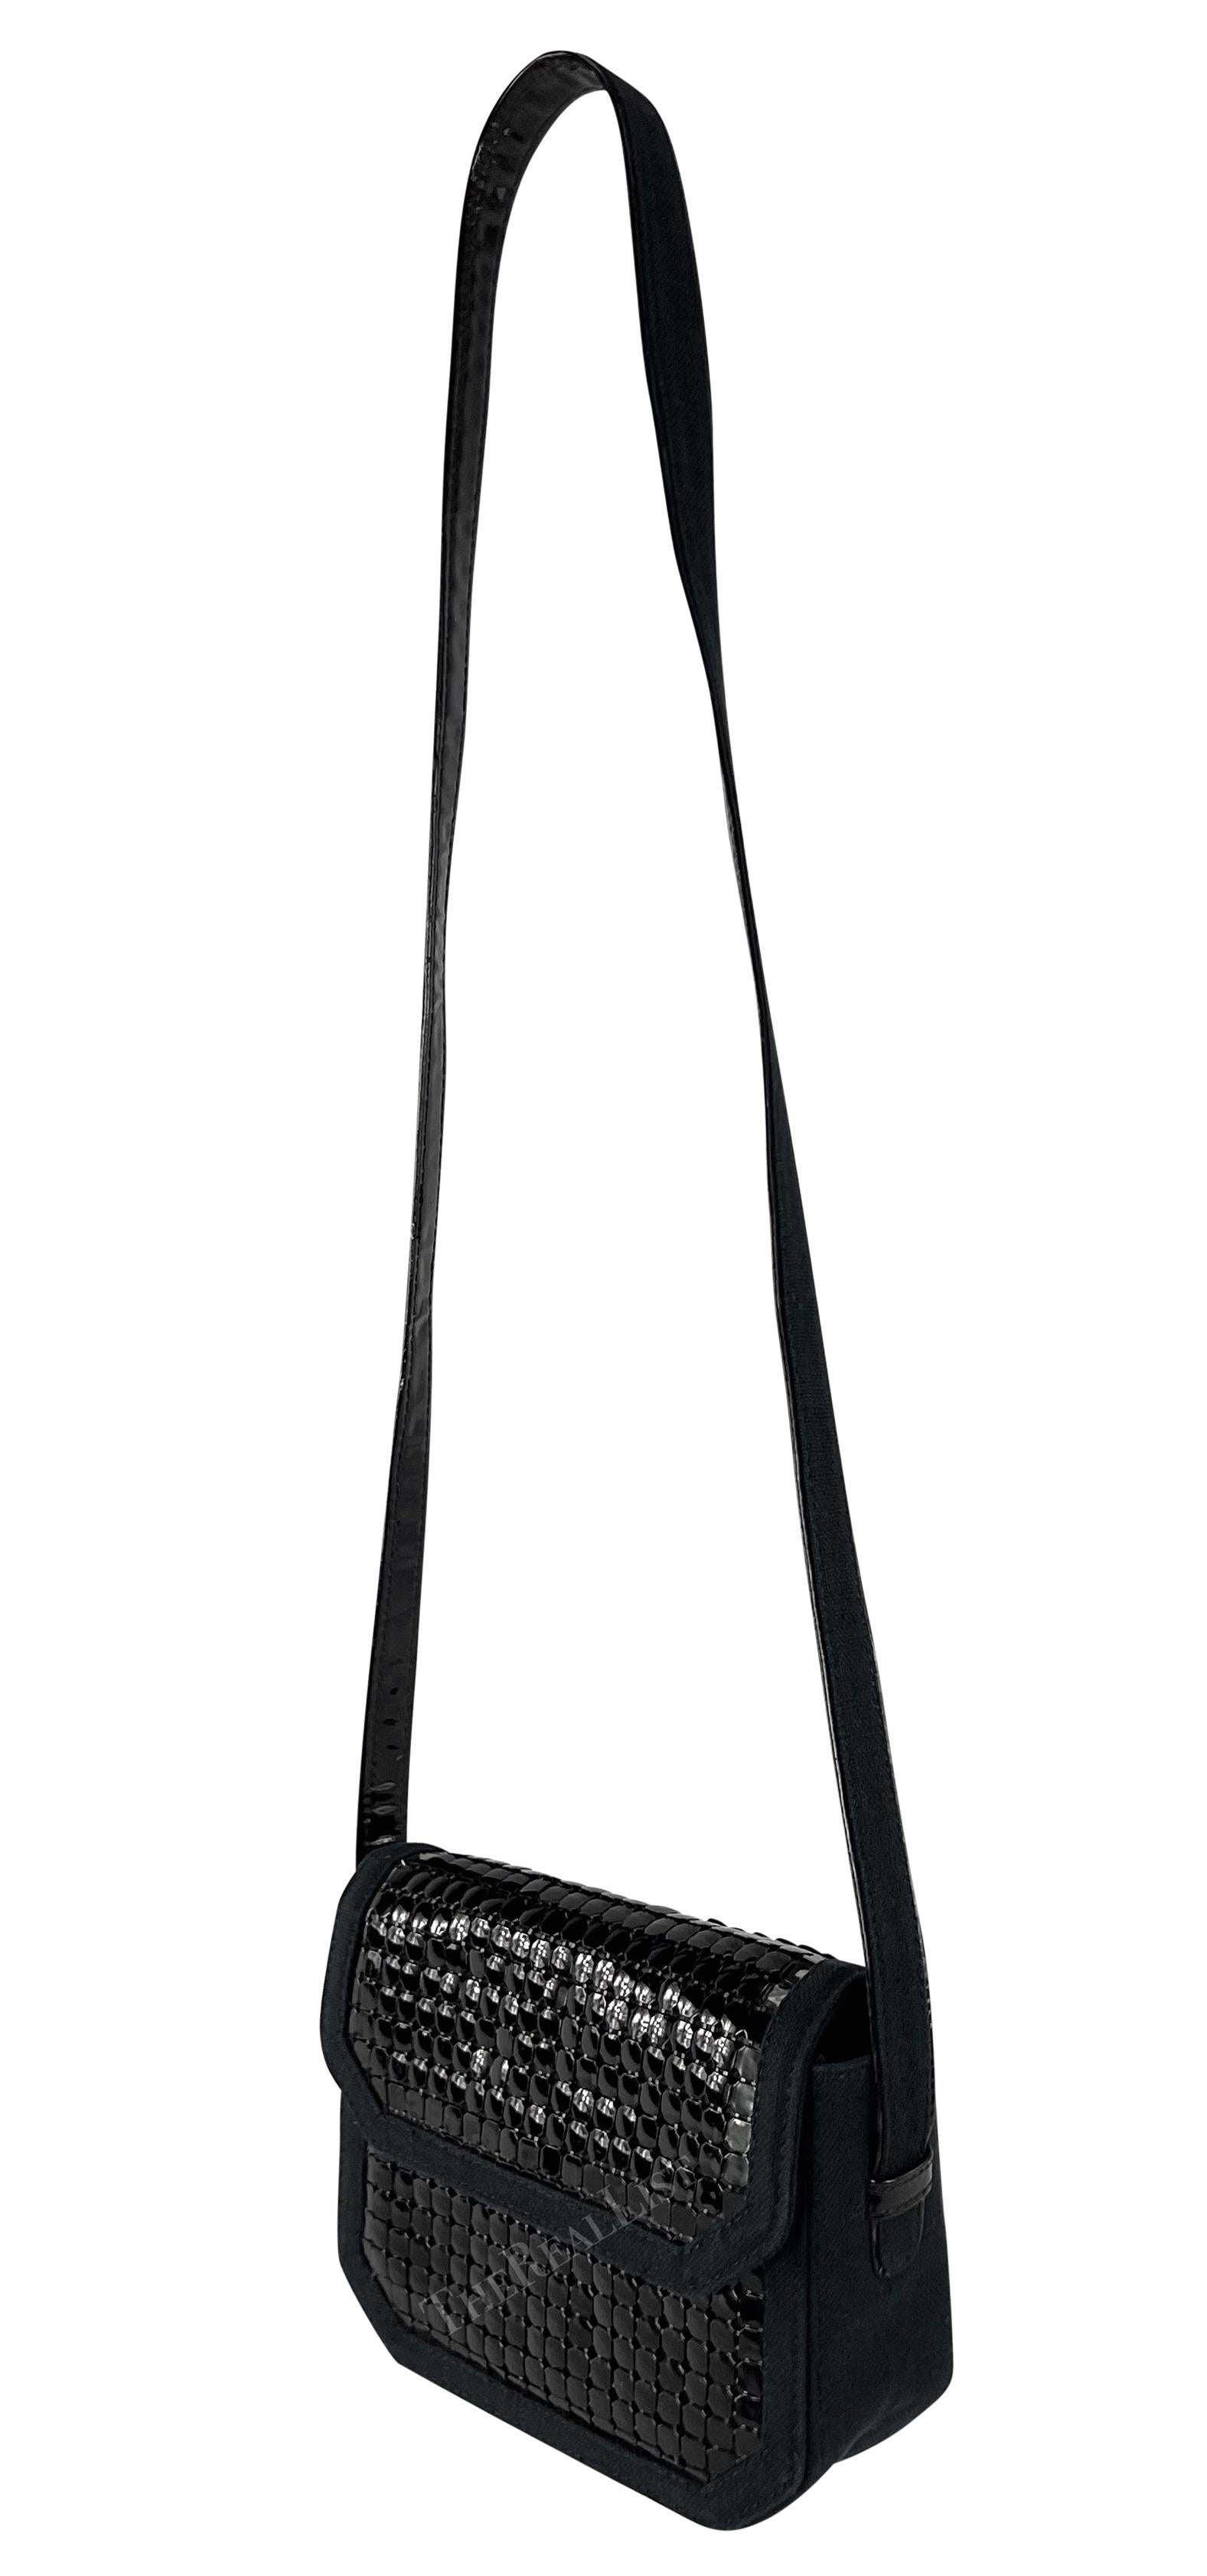 Wir präsentieren eine schicke schwarze Oroton Gianni Versace Umhängetasche, entworfen von Gianni Versace. Diese fabelhafte schwarze Canvas-Tasche aus den 1980er Jahren ist mit einem übergroßen, glänzenden schwarzen Metall-Oroton überzogen. Die